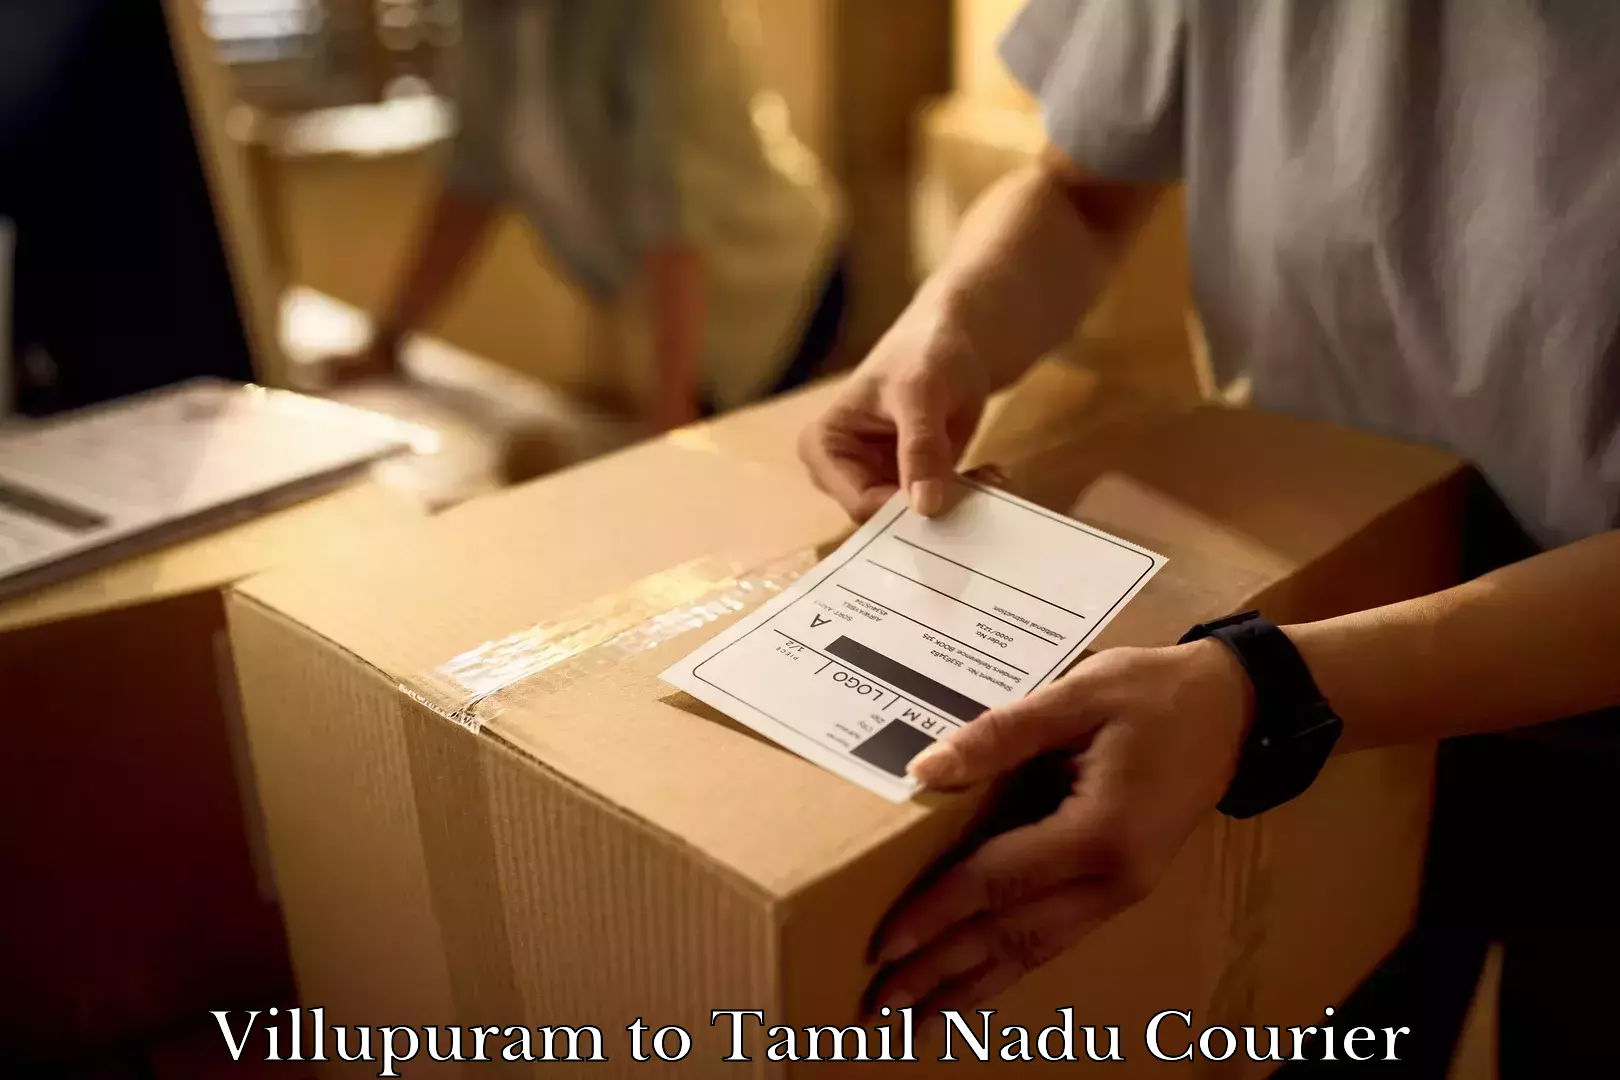 Furniture transport professionals Villupuram to Thoppur